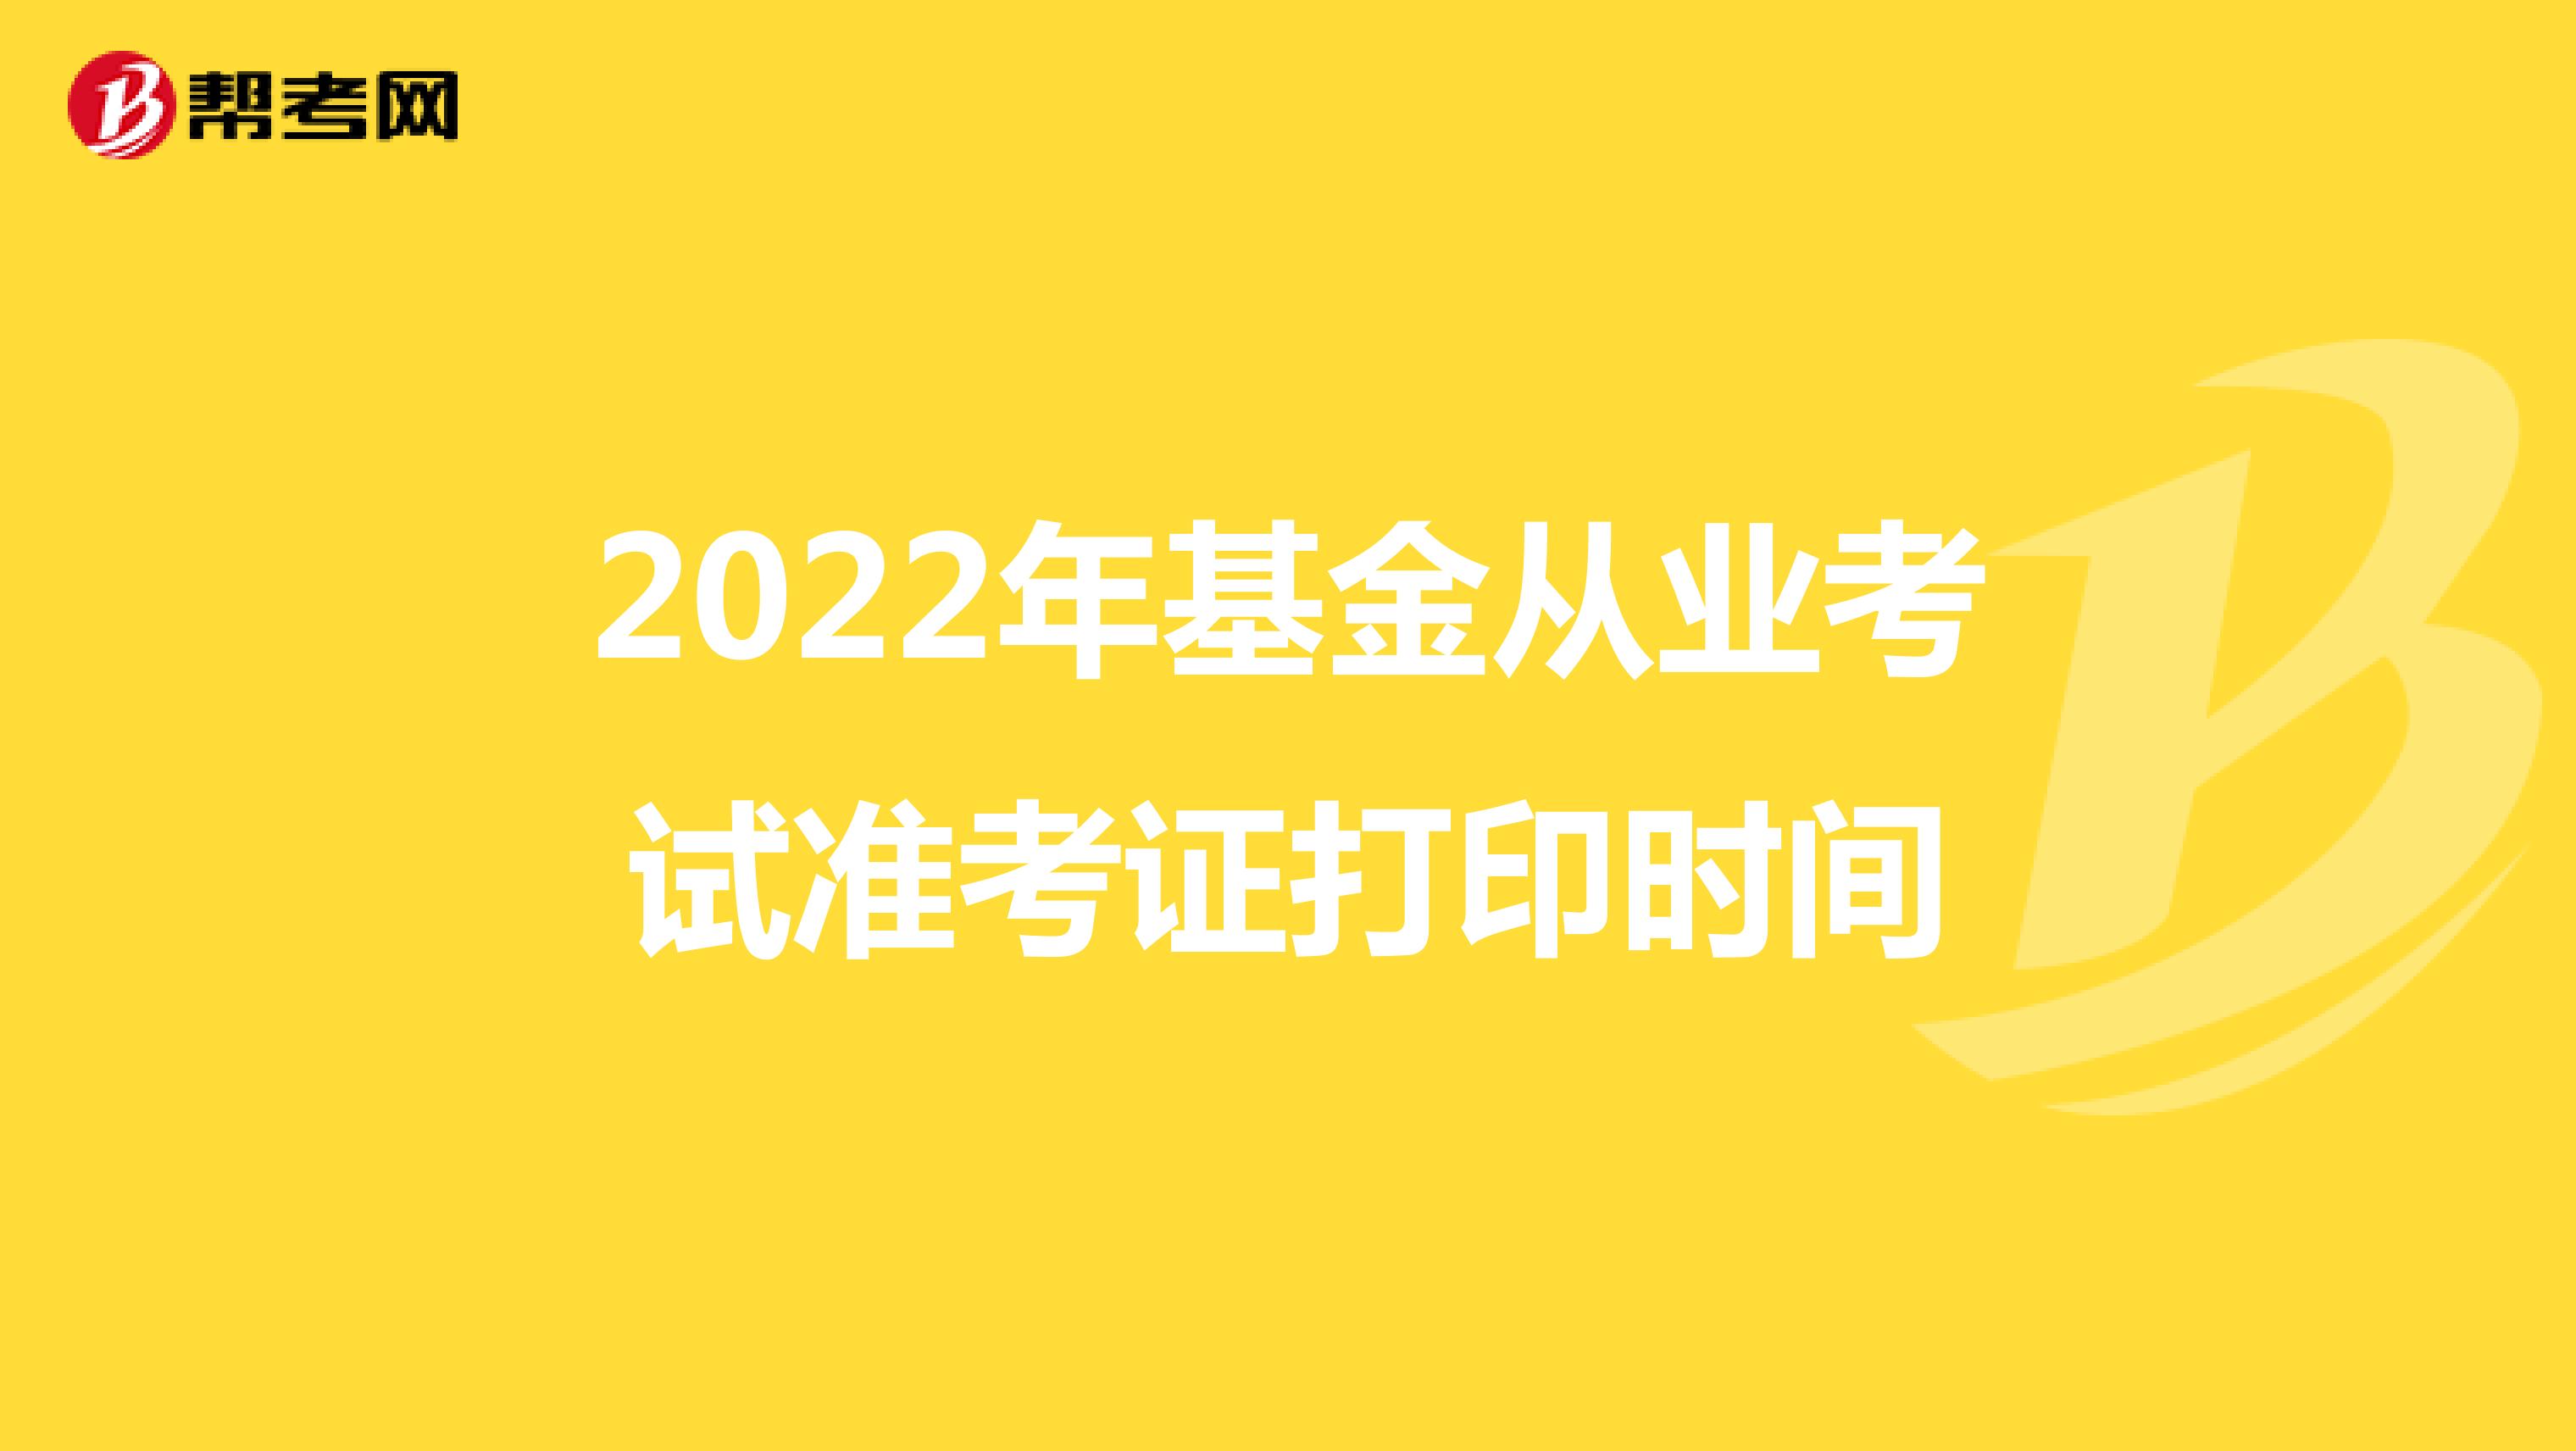 2022年基金从业考试准考证打印时间